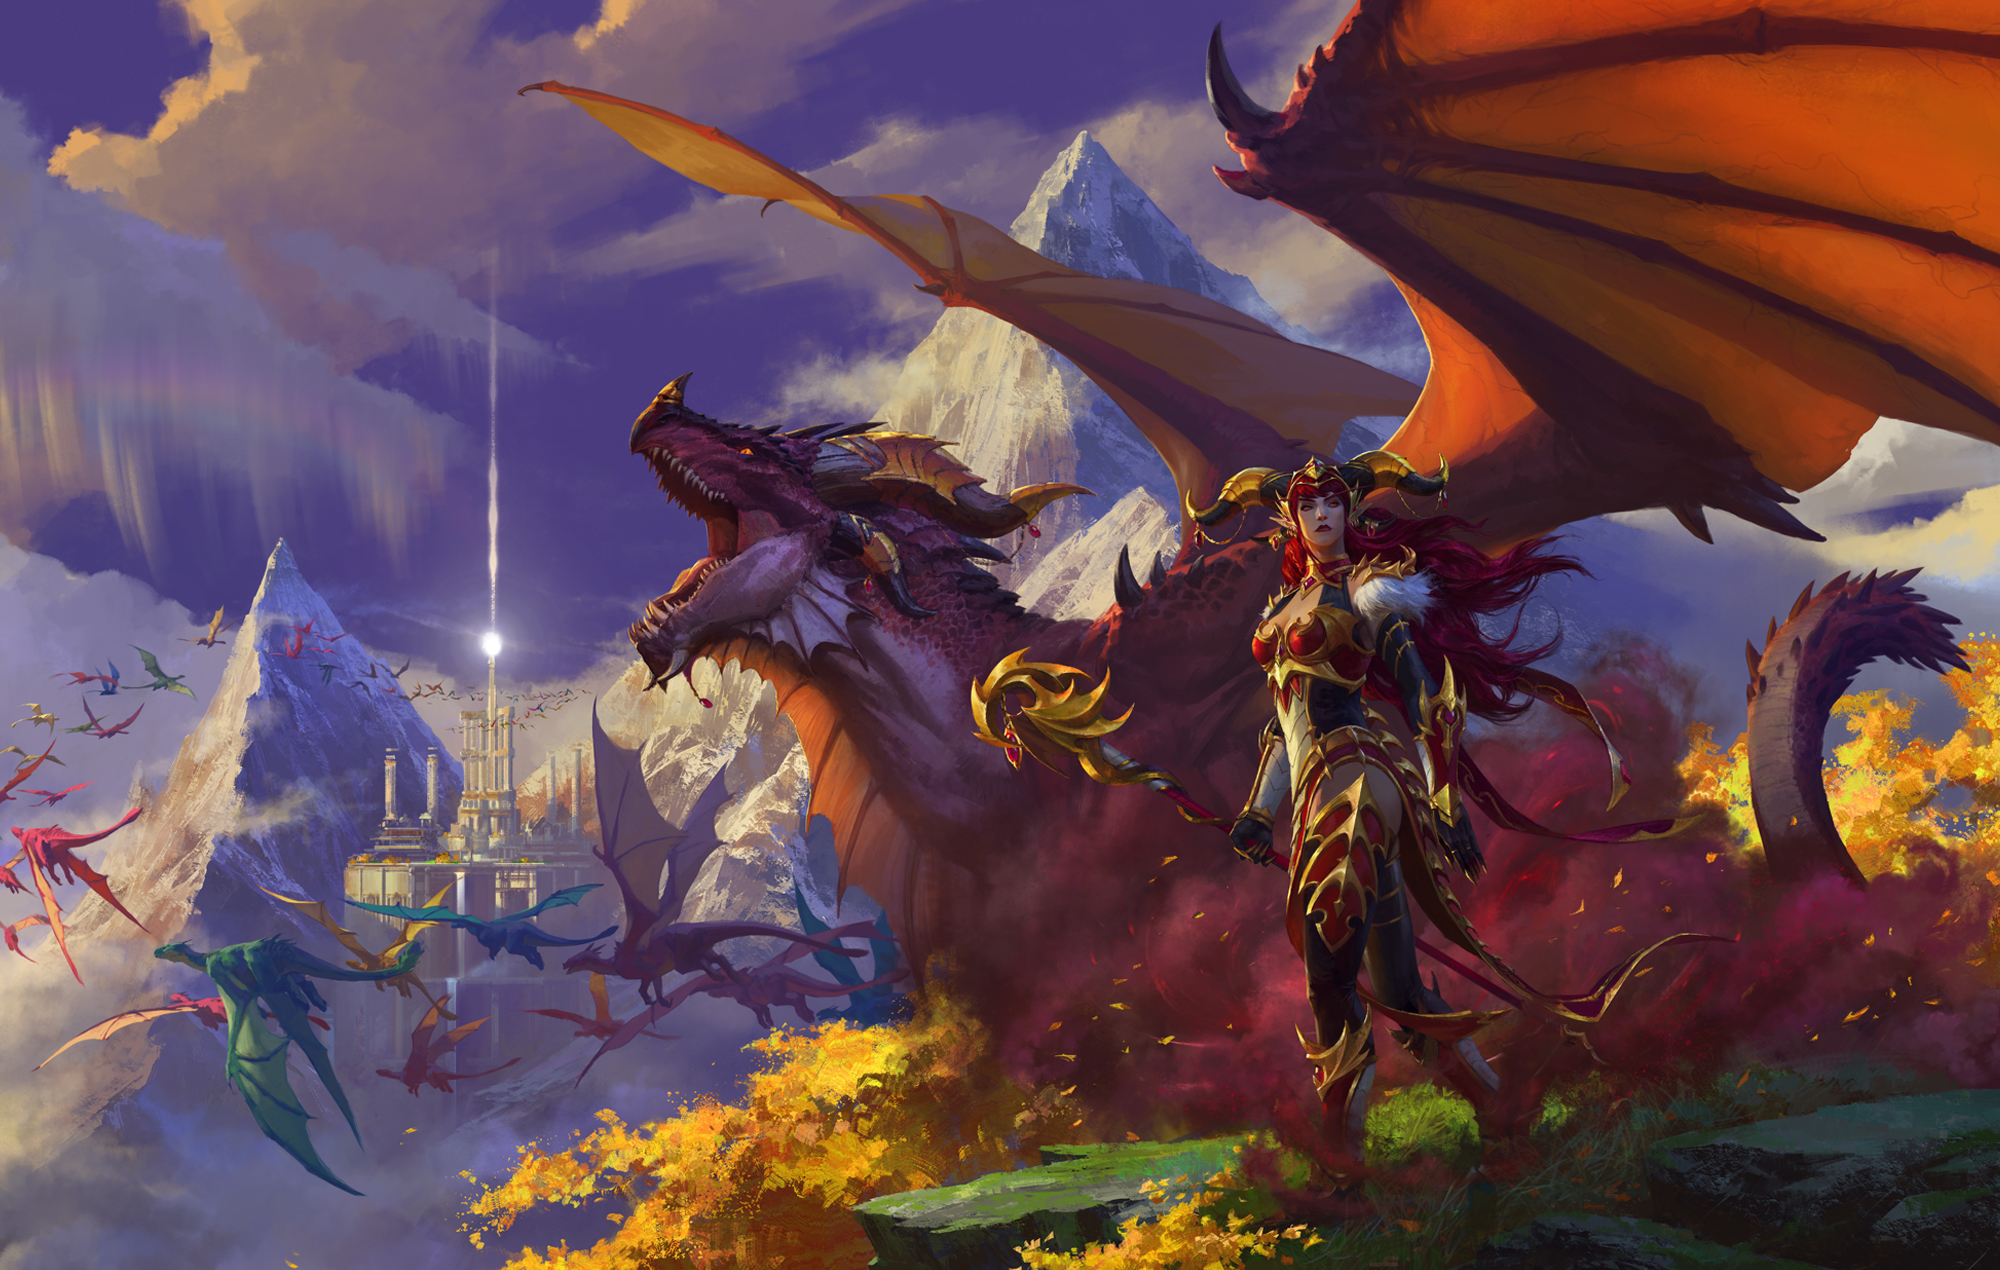 World of Warcraft: Drachenschwarm